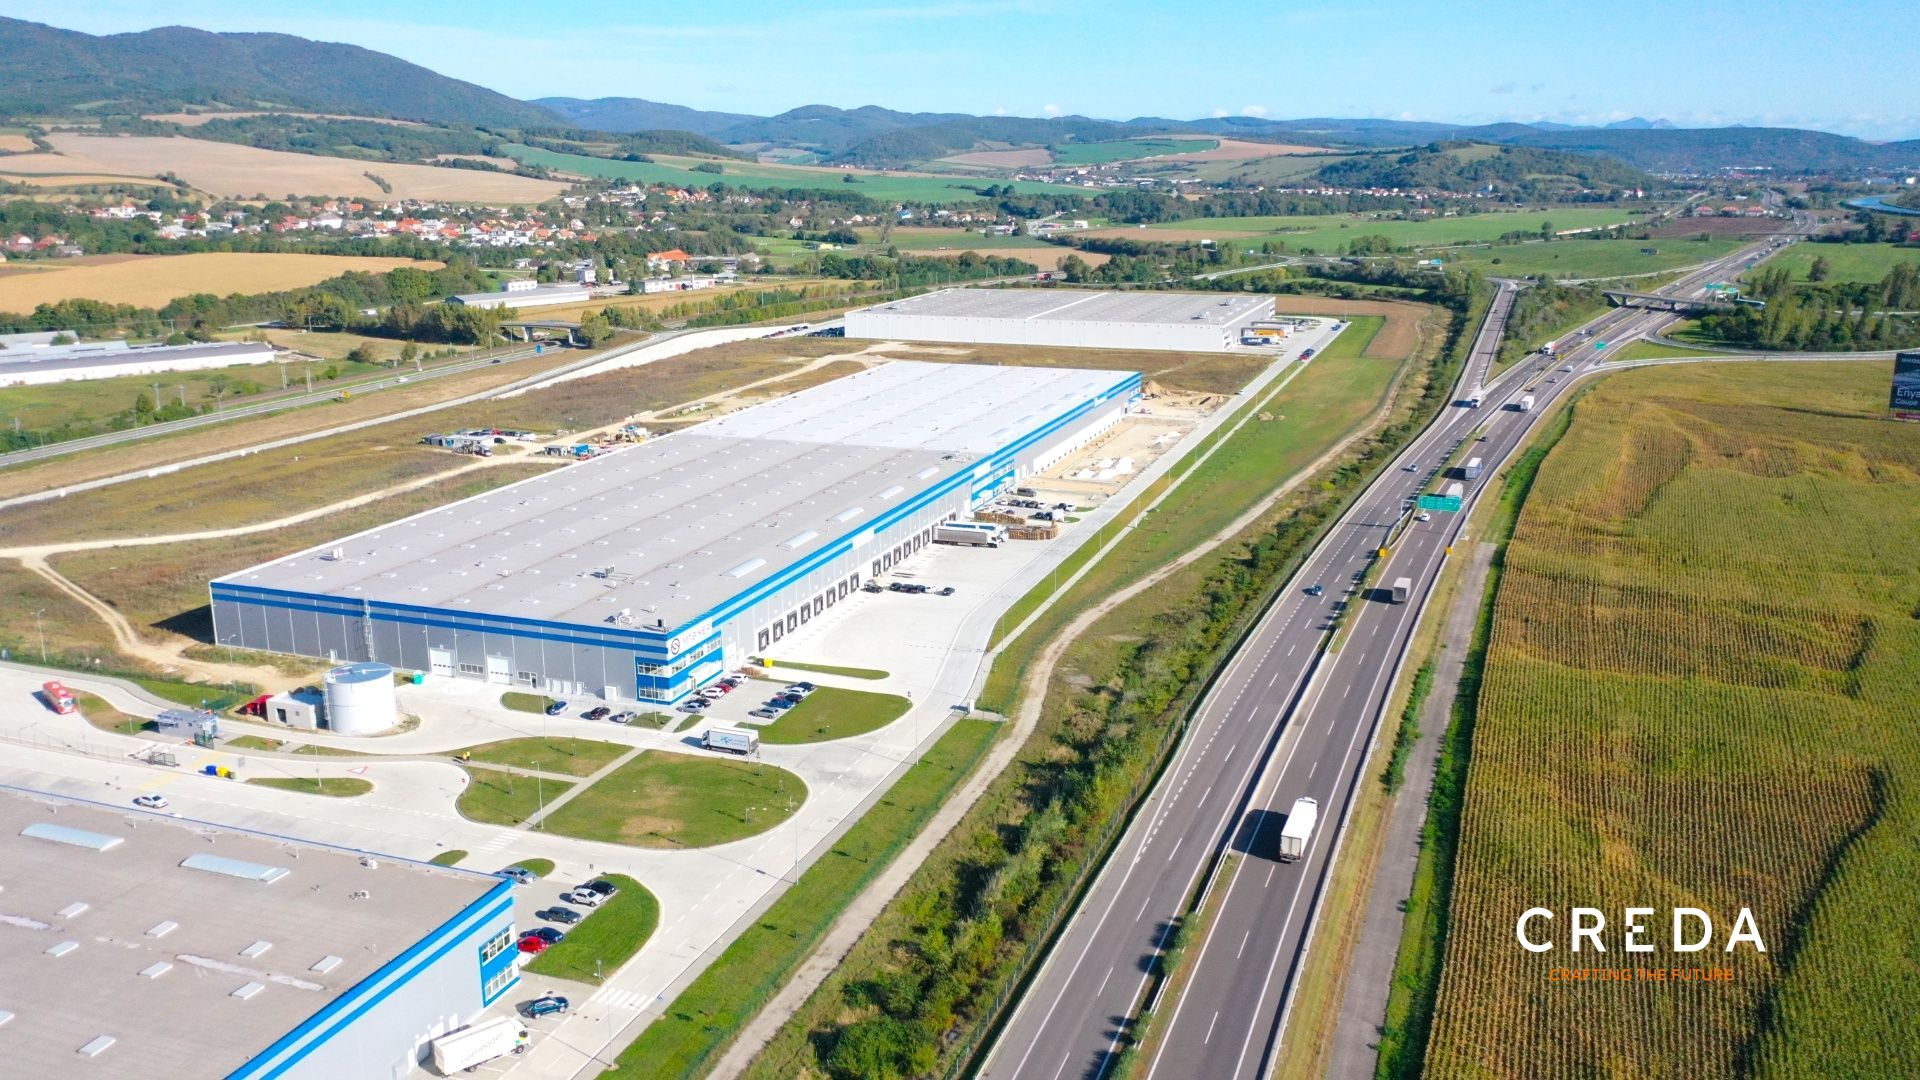 CREDA | prenájom 32 000 m2 skladové priestory, Trenčín - SIHOTPARK